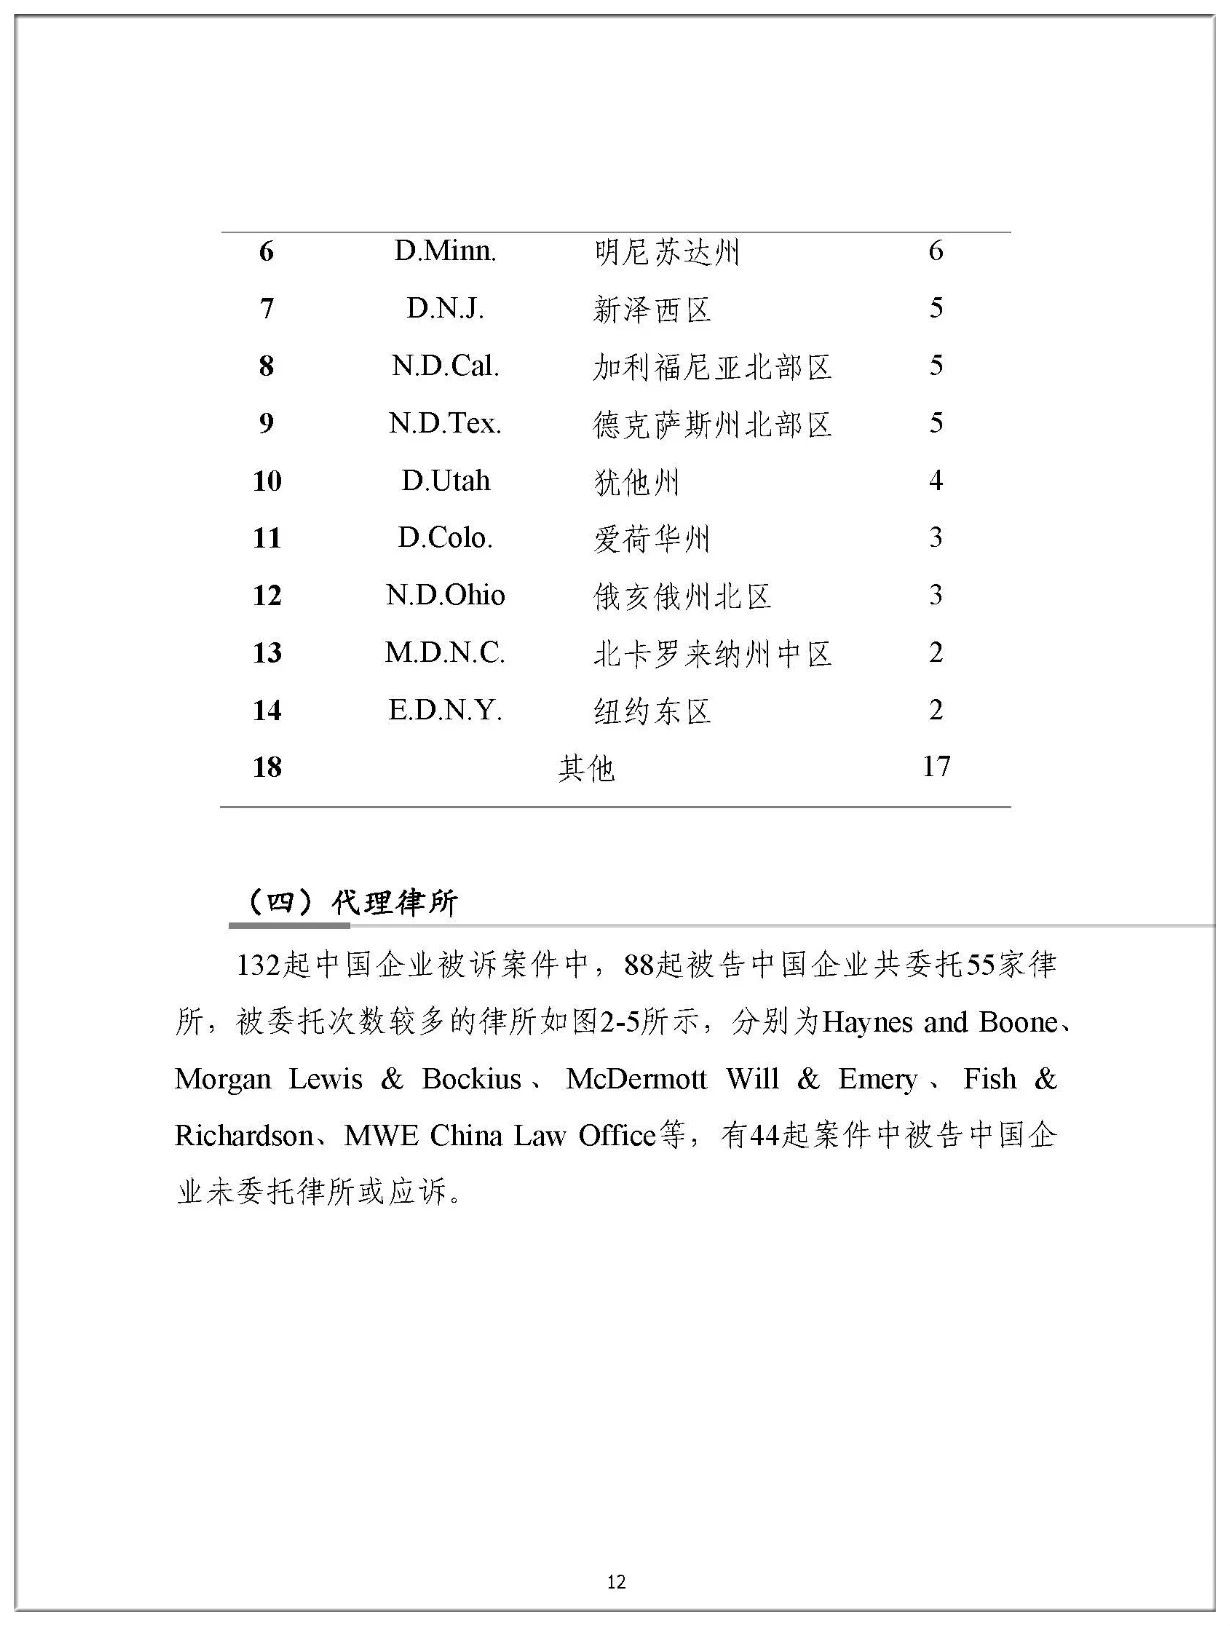 2019年中国企业涉美知识产权诉讼报告（全文）